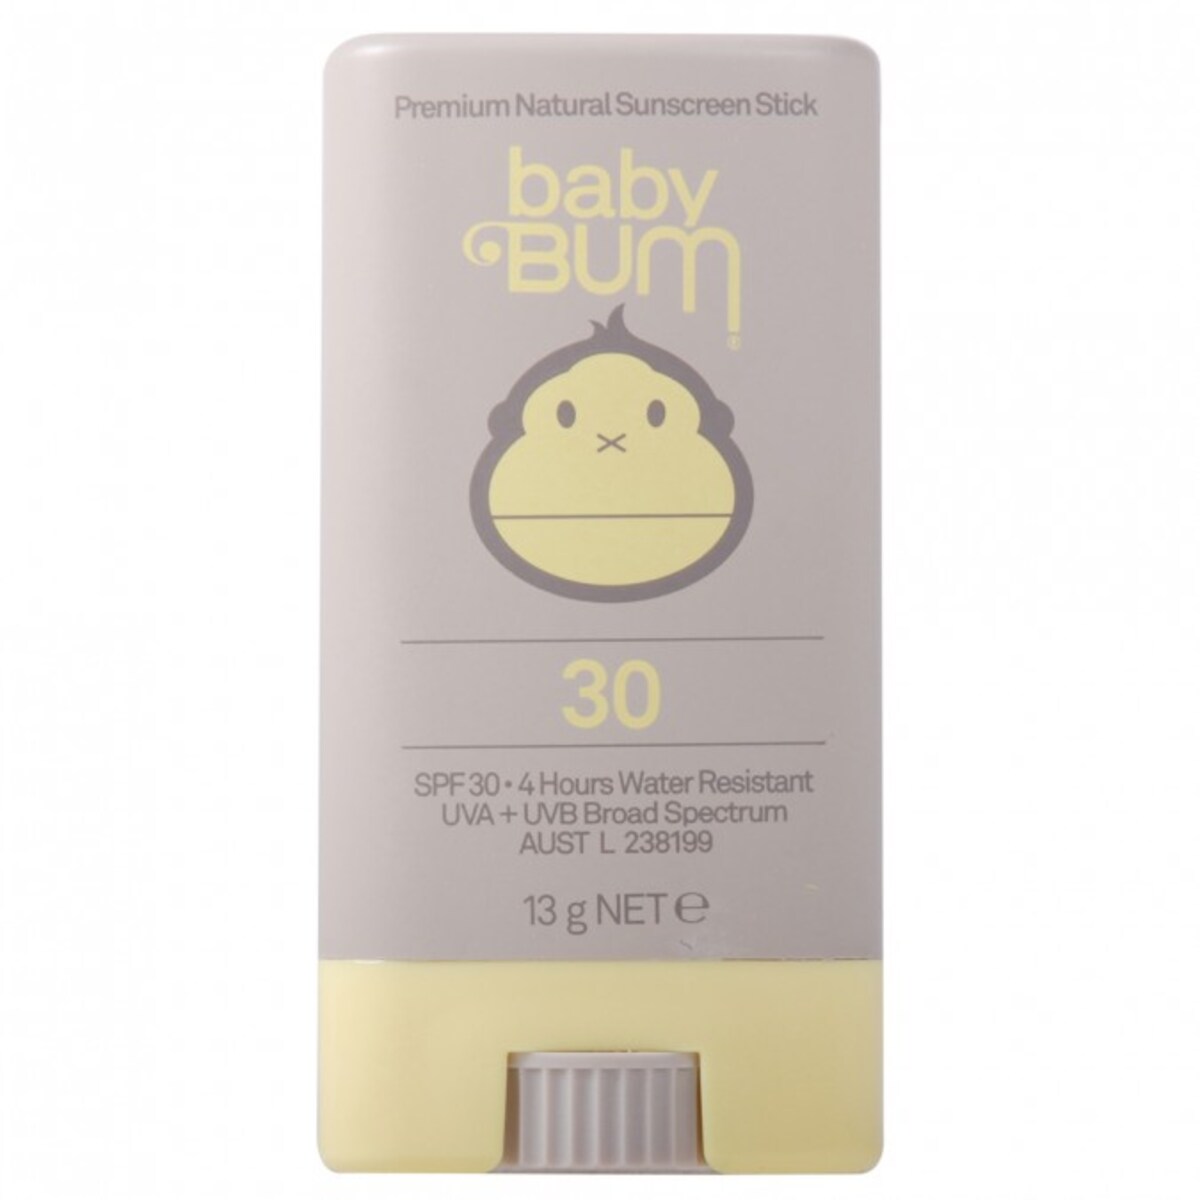 Sun Bum Baby Premium Natural Sunscreen Stick SPF30 13g